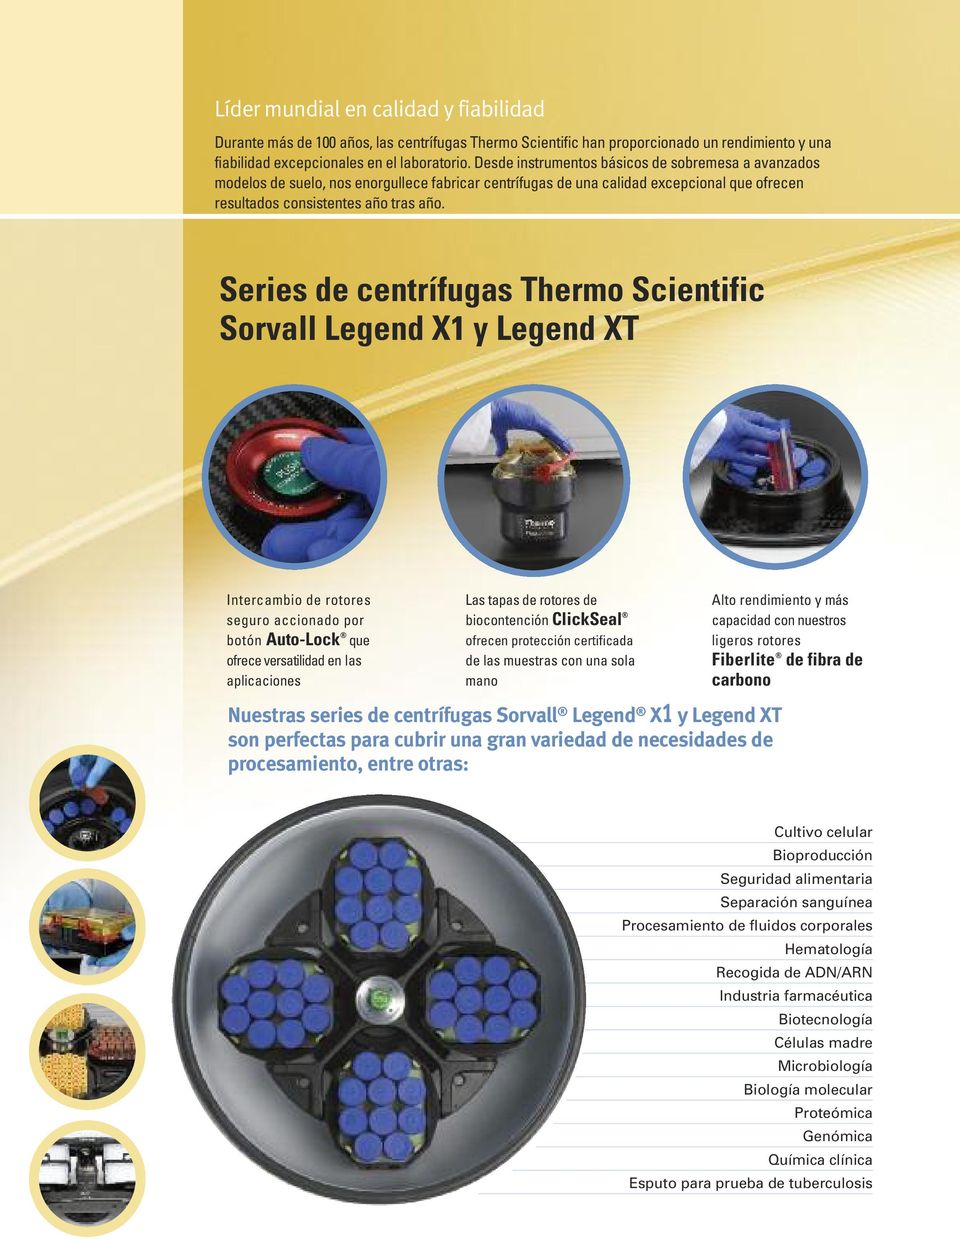 Series de centrífugas Thermo Scientific X1 y Legend XT Intercambio de rotores seguro accionado por botón Auto-Lock que ofrece versatilidad en las aplicaciones Las tapas de rotores de biocontención